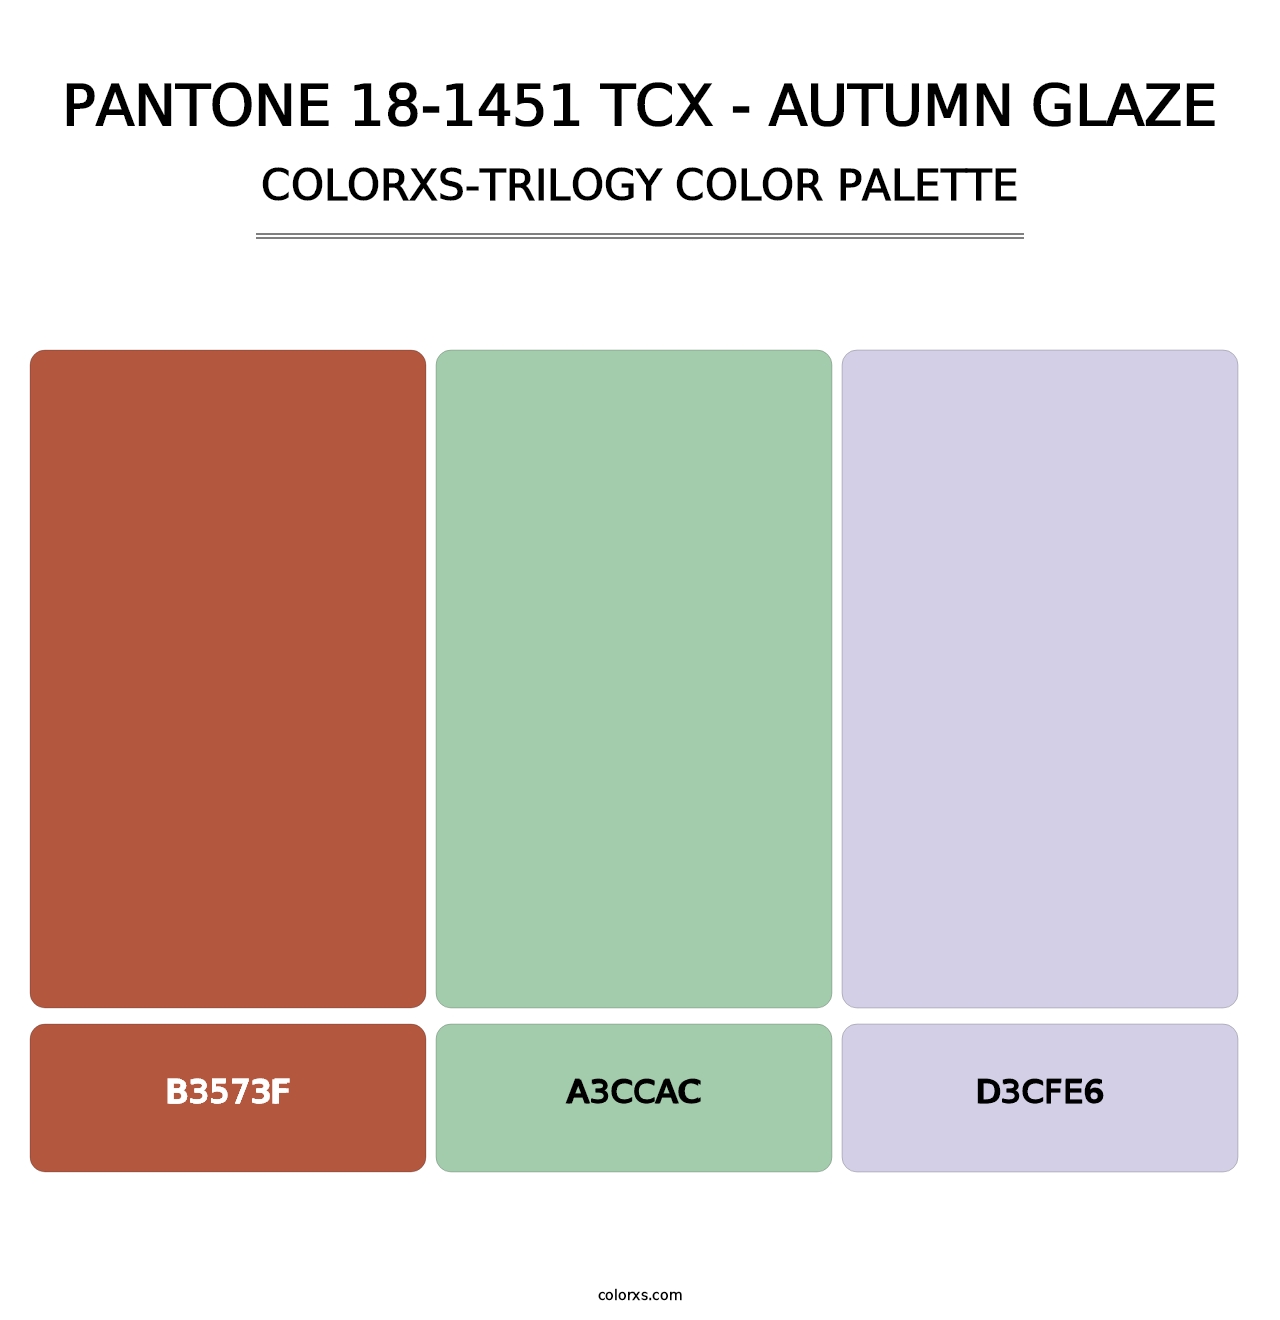 PANTONE 18-1451 TCX - Autumn Glaze - Colorxs Trilogy Palette